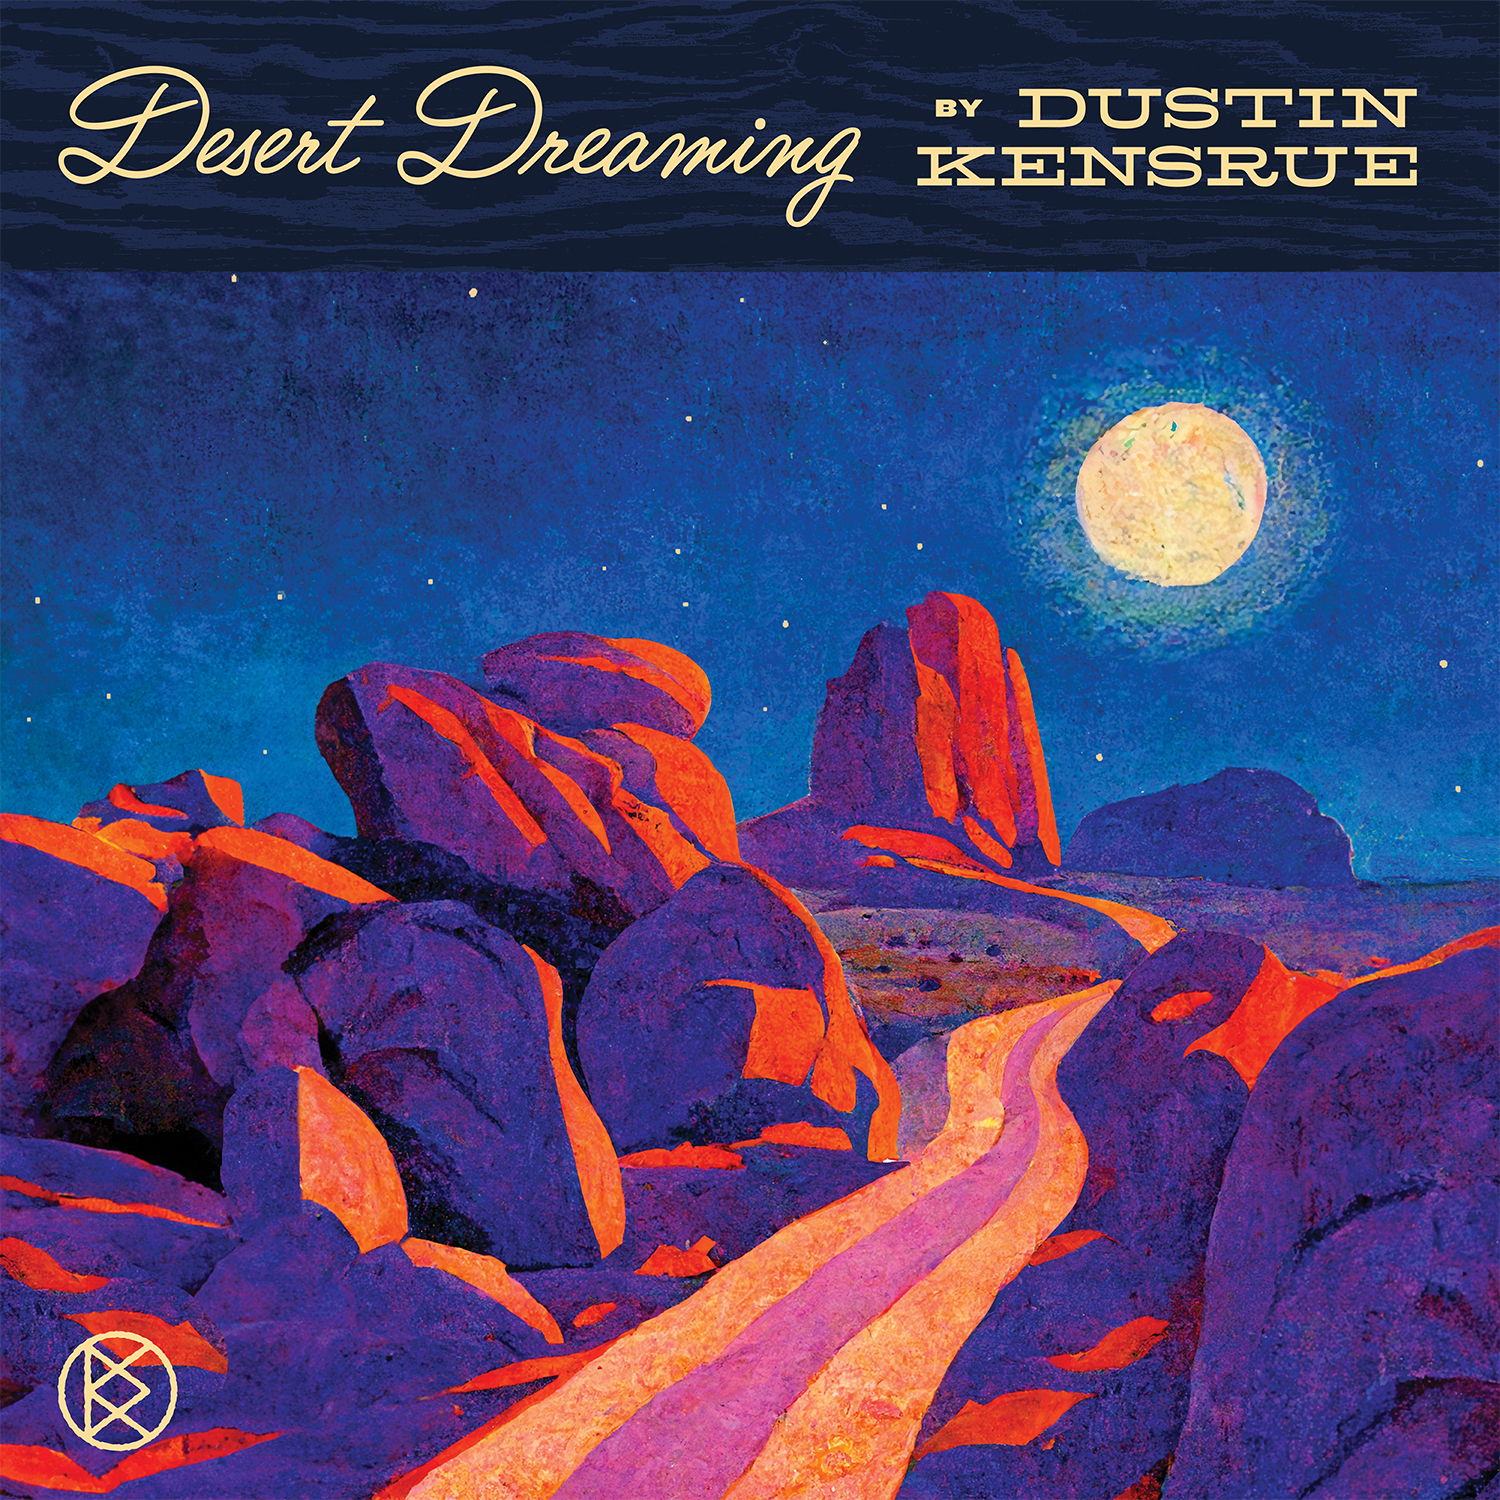 DUSTIN KENSRUE ANNOUNCES NEW ALT-COUNTRY ALBUM DESERT DREAMING